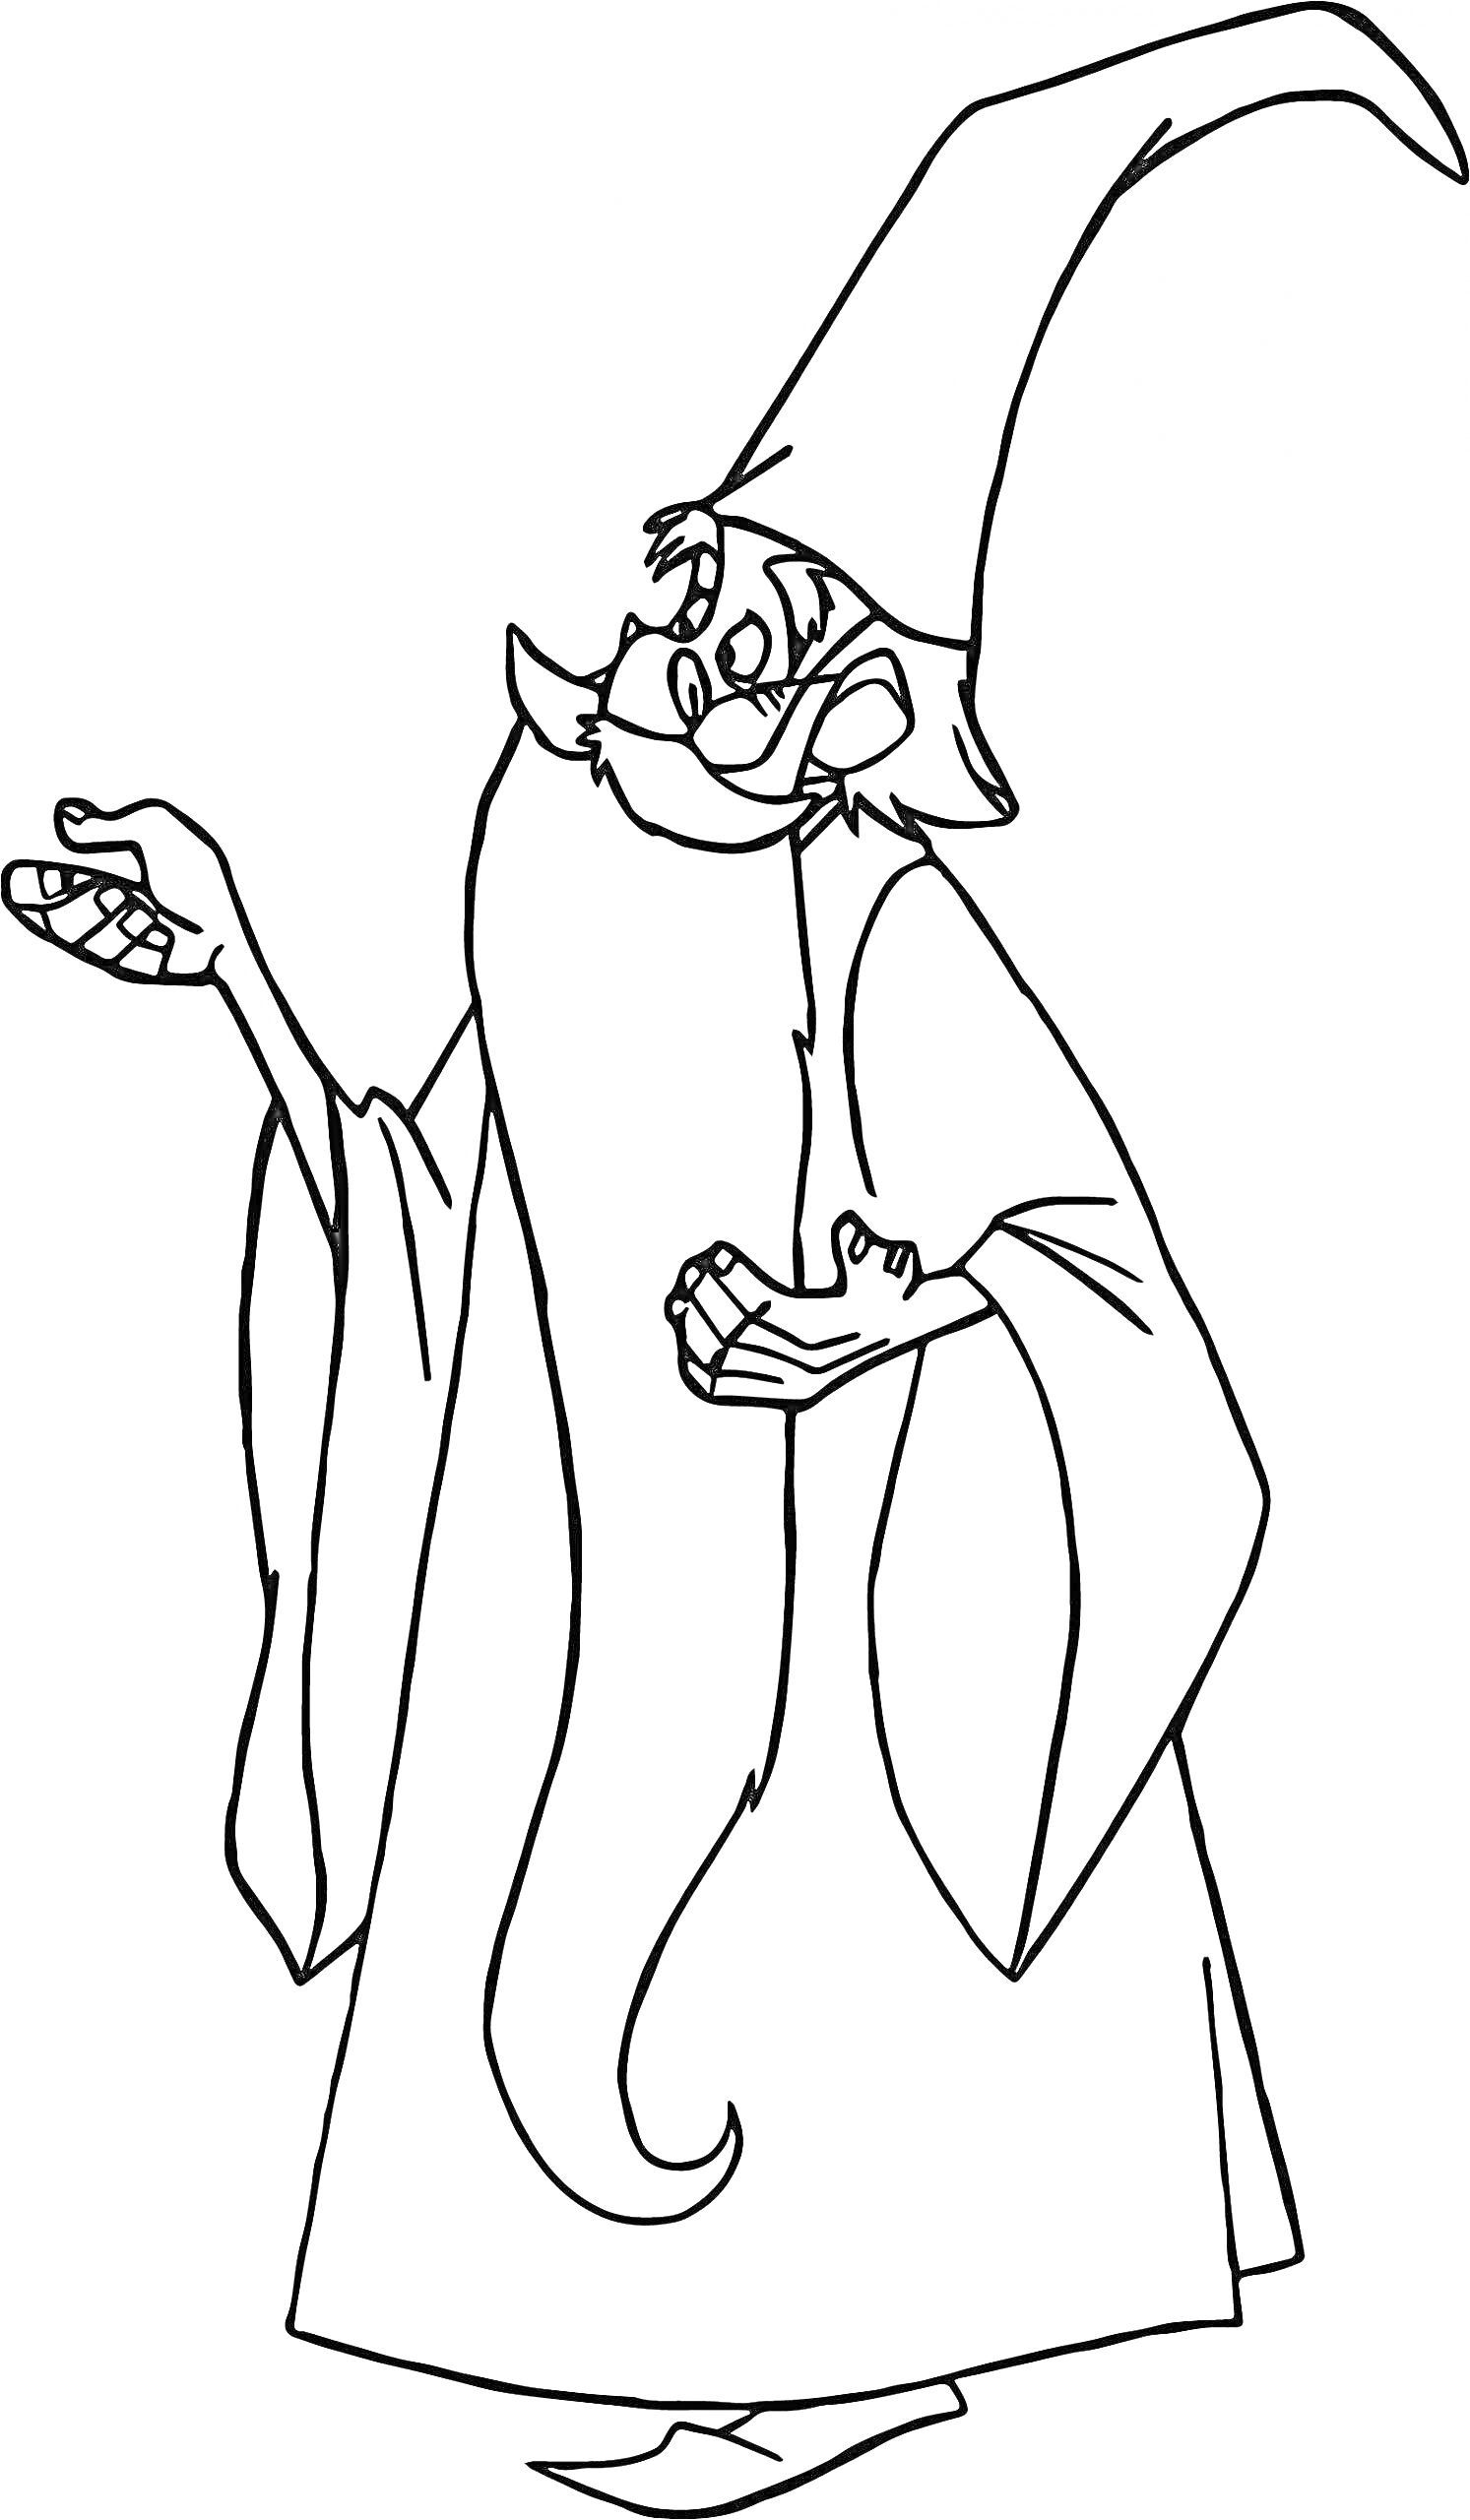 Раскраска Волшебник с длинной бородой в остроконечной шляпе и длинной мантии, держит в руках волшебные предметы